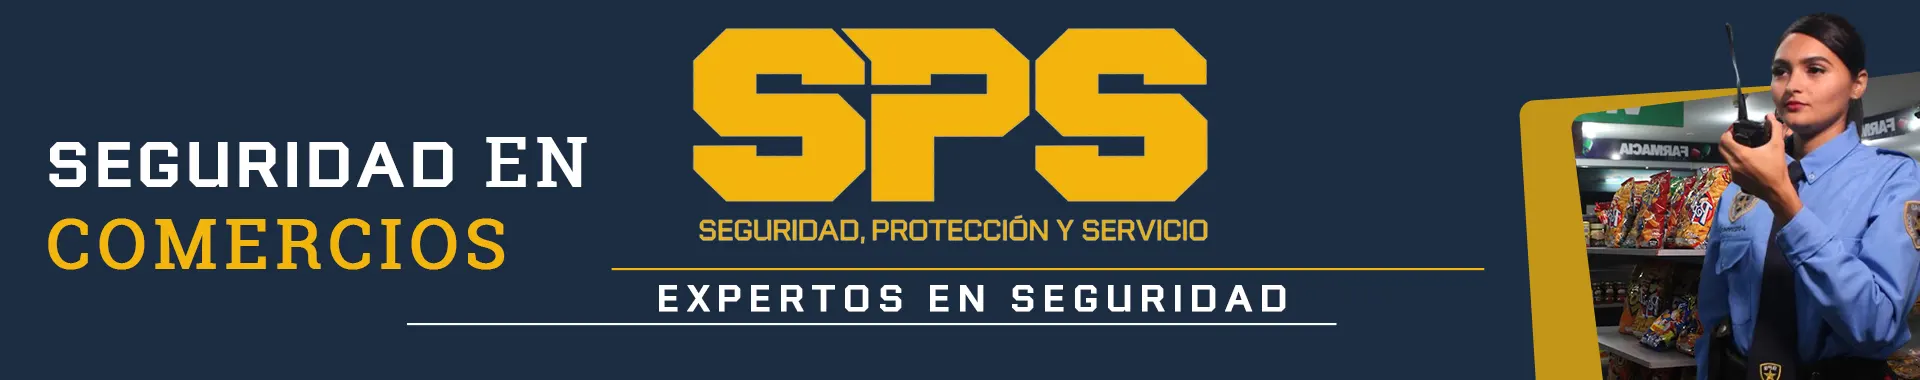 Imagen 2 del perfil de Seguridad SPS